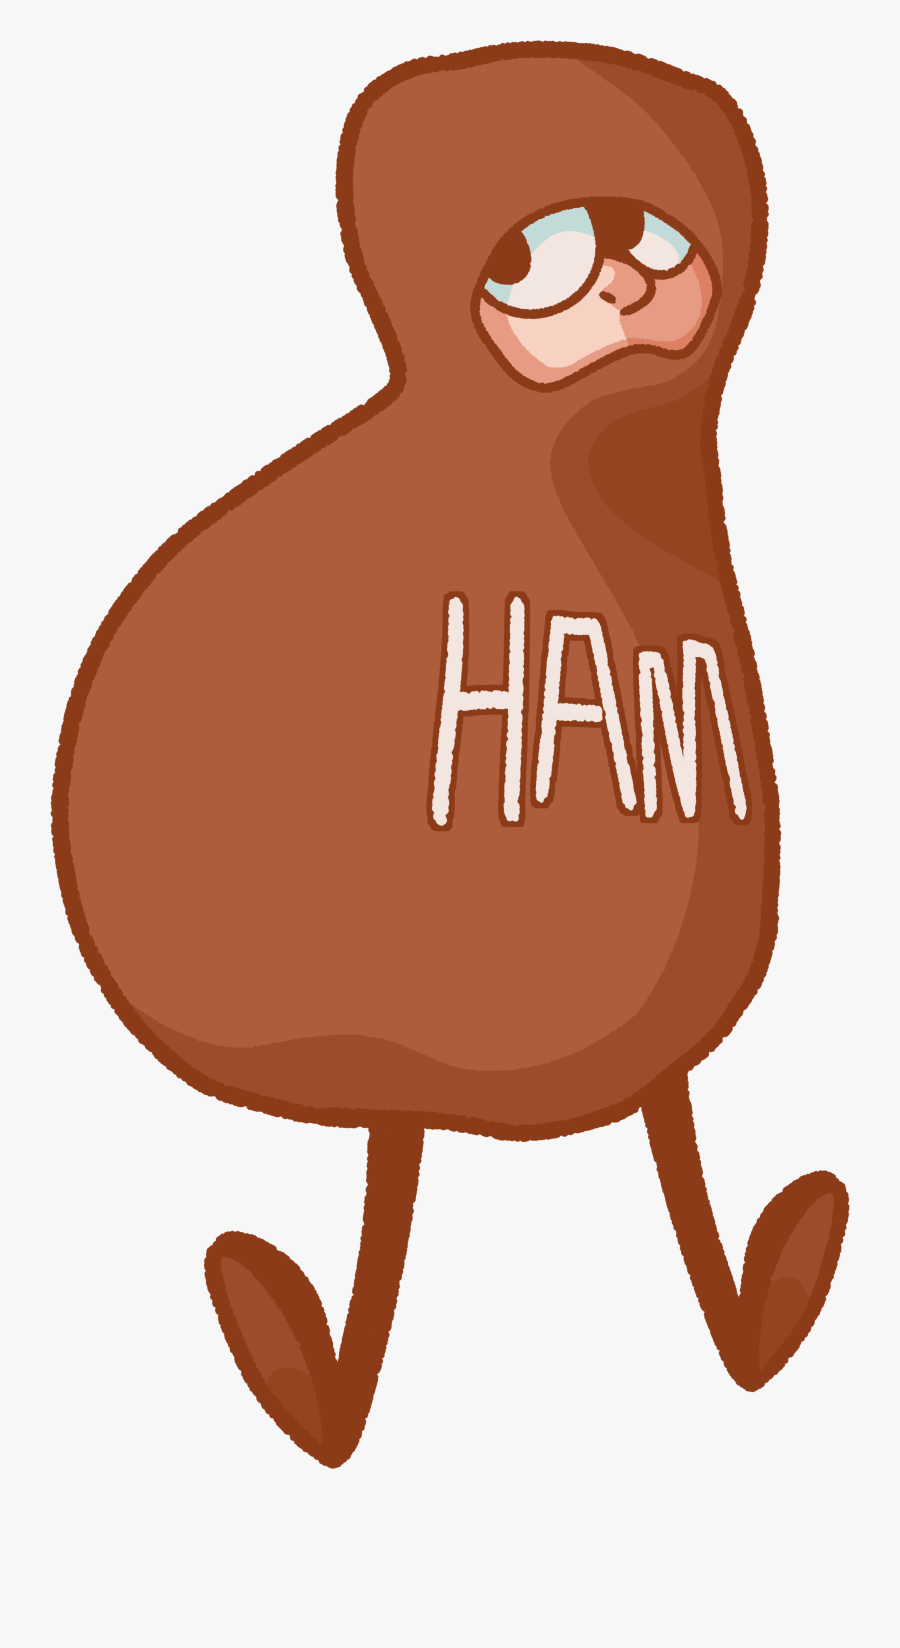 What A Ham - Illustration, Transparent Clipart